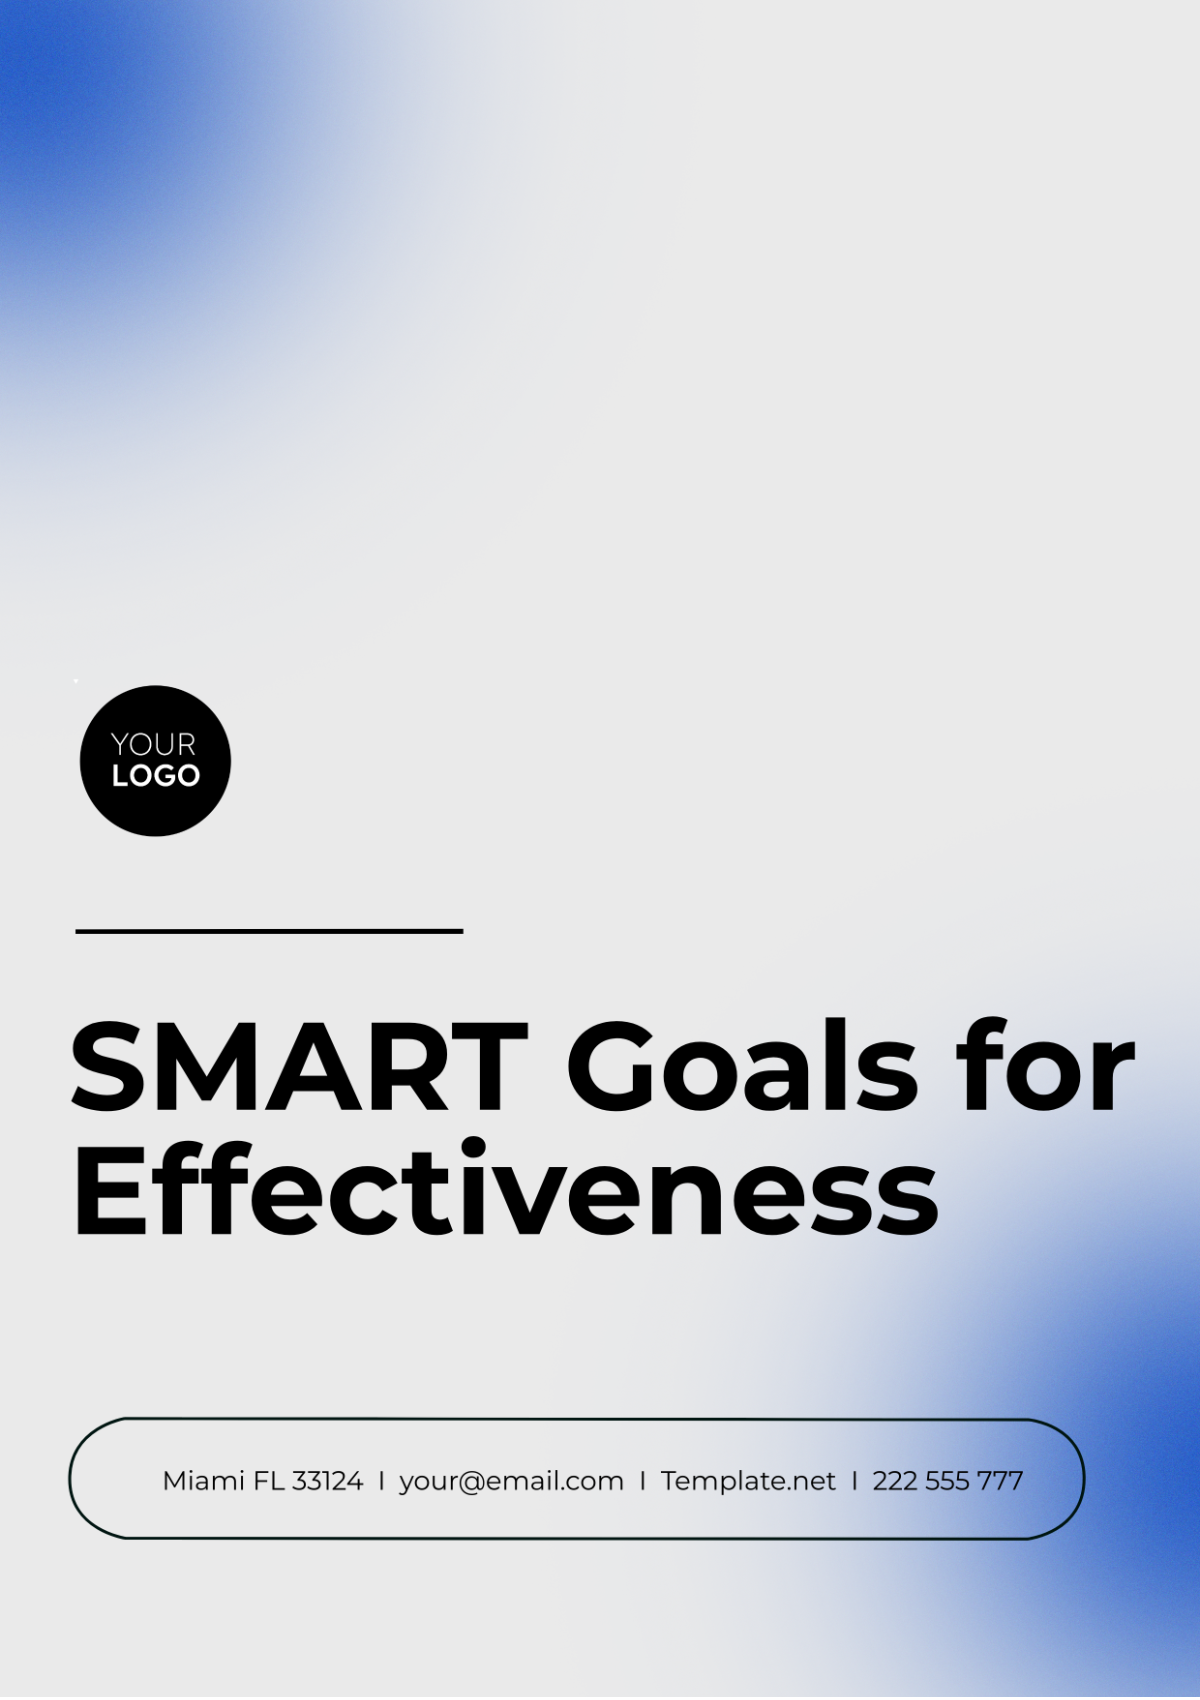 SMART Goals Template for Effectiveness